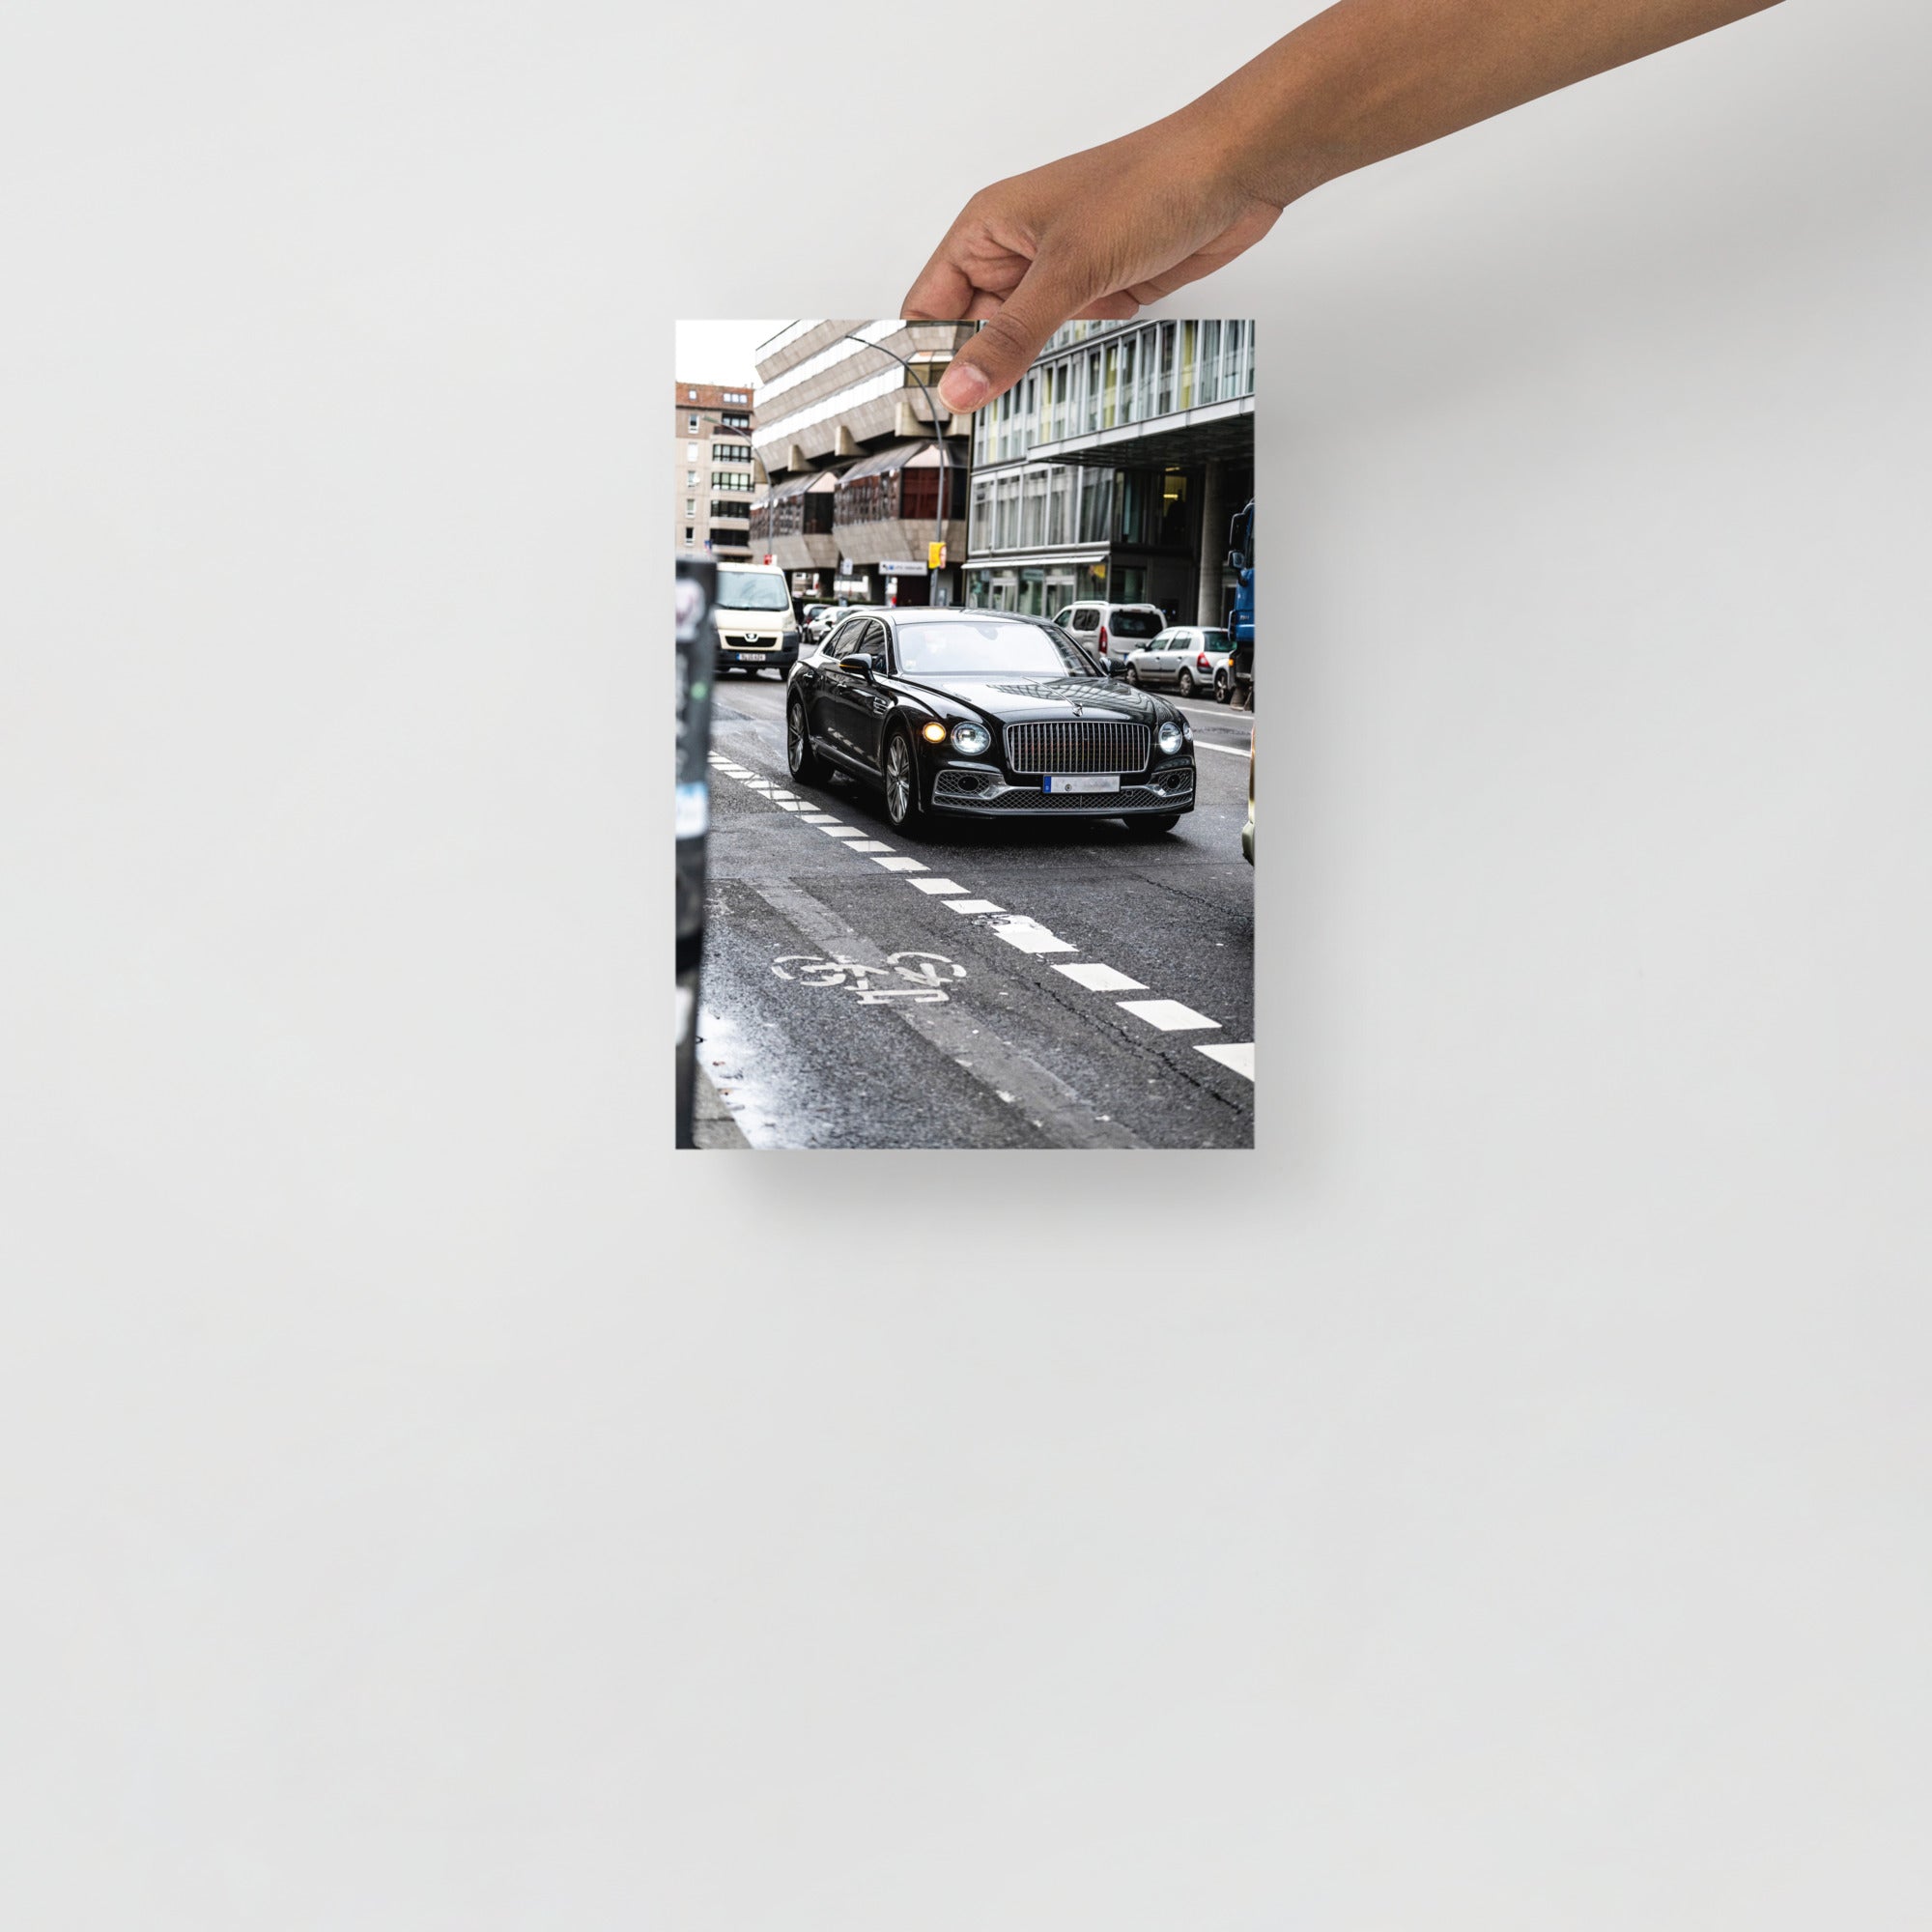 Poster mural - Bentley Mulsanne – Photographie de voiture – Poster photo, poster XXL, Photo d’art, photographie murale et des posters muraux des photographies de rue unique au monde. La boutique de posters créée par un Photographe français.